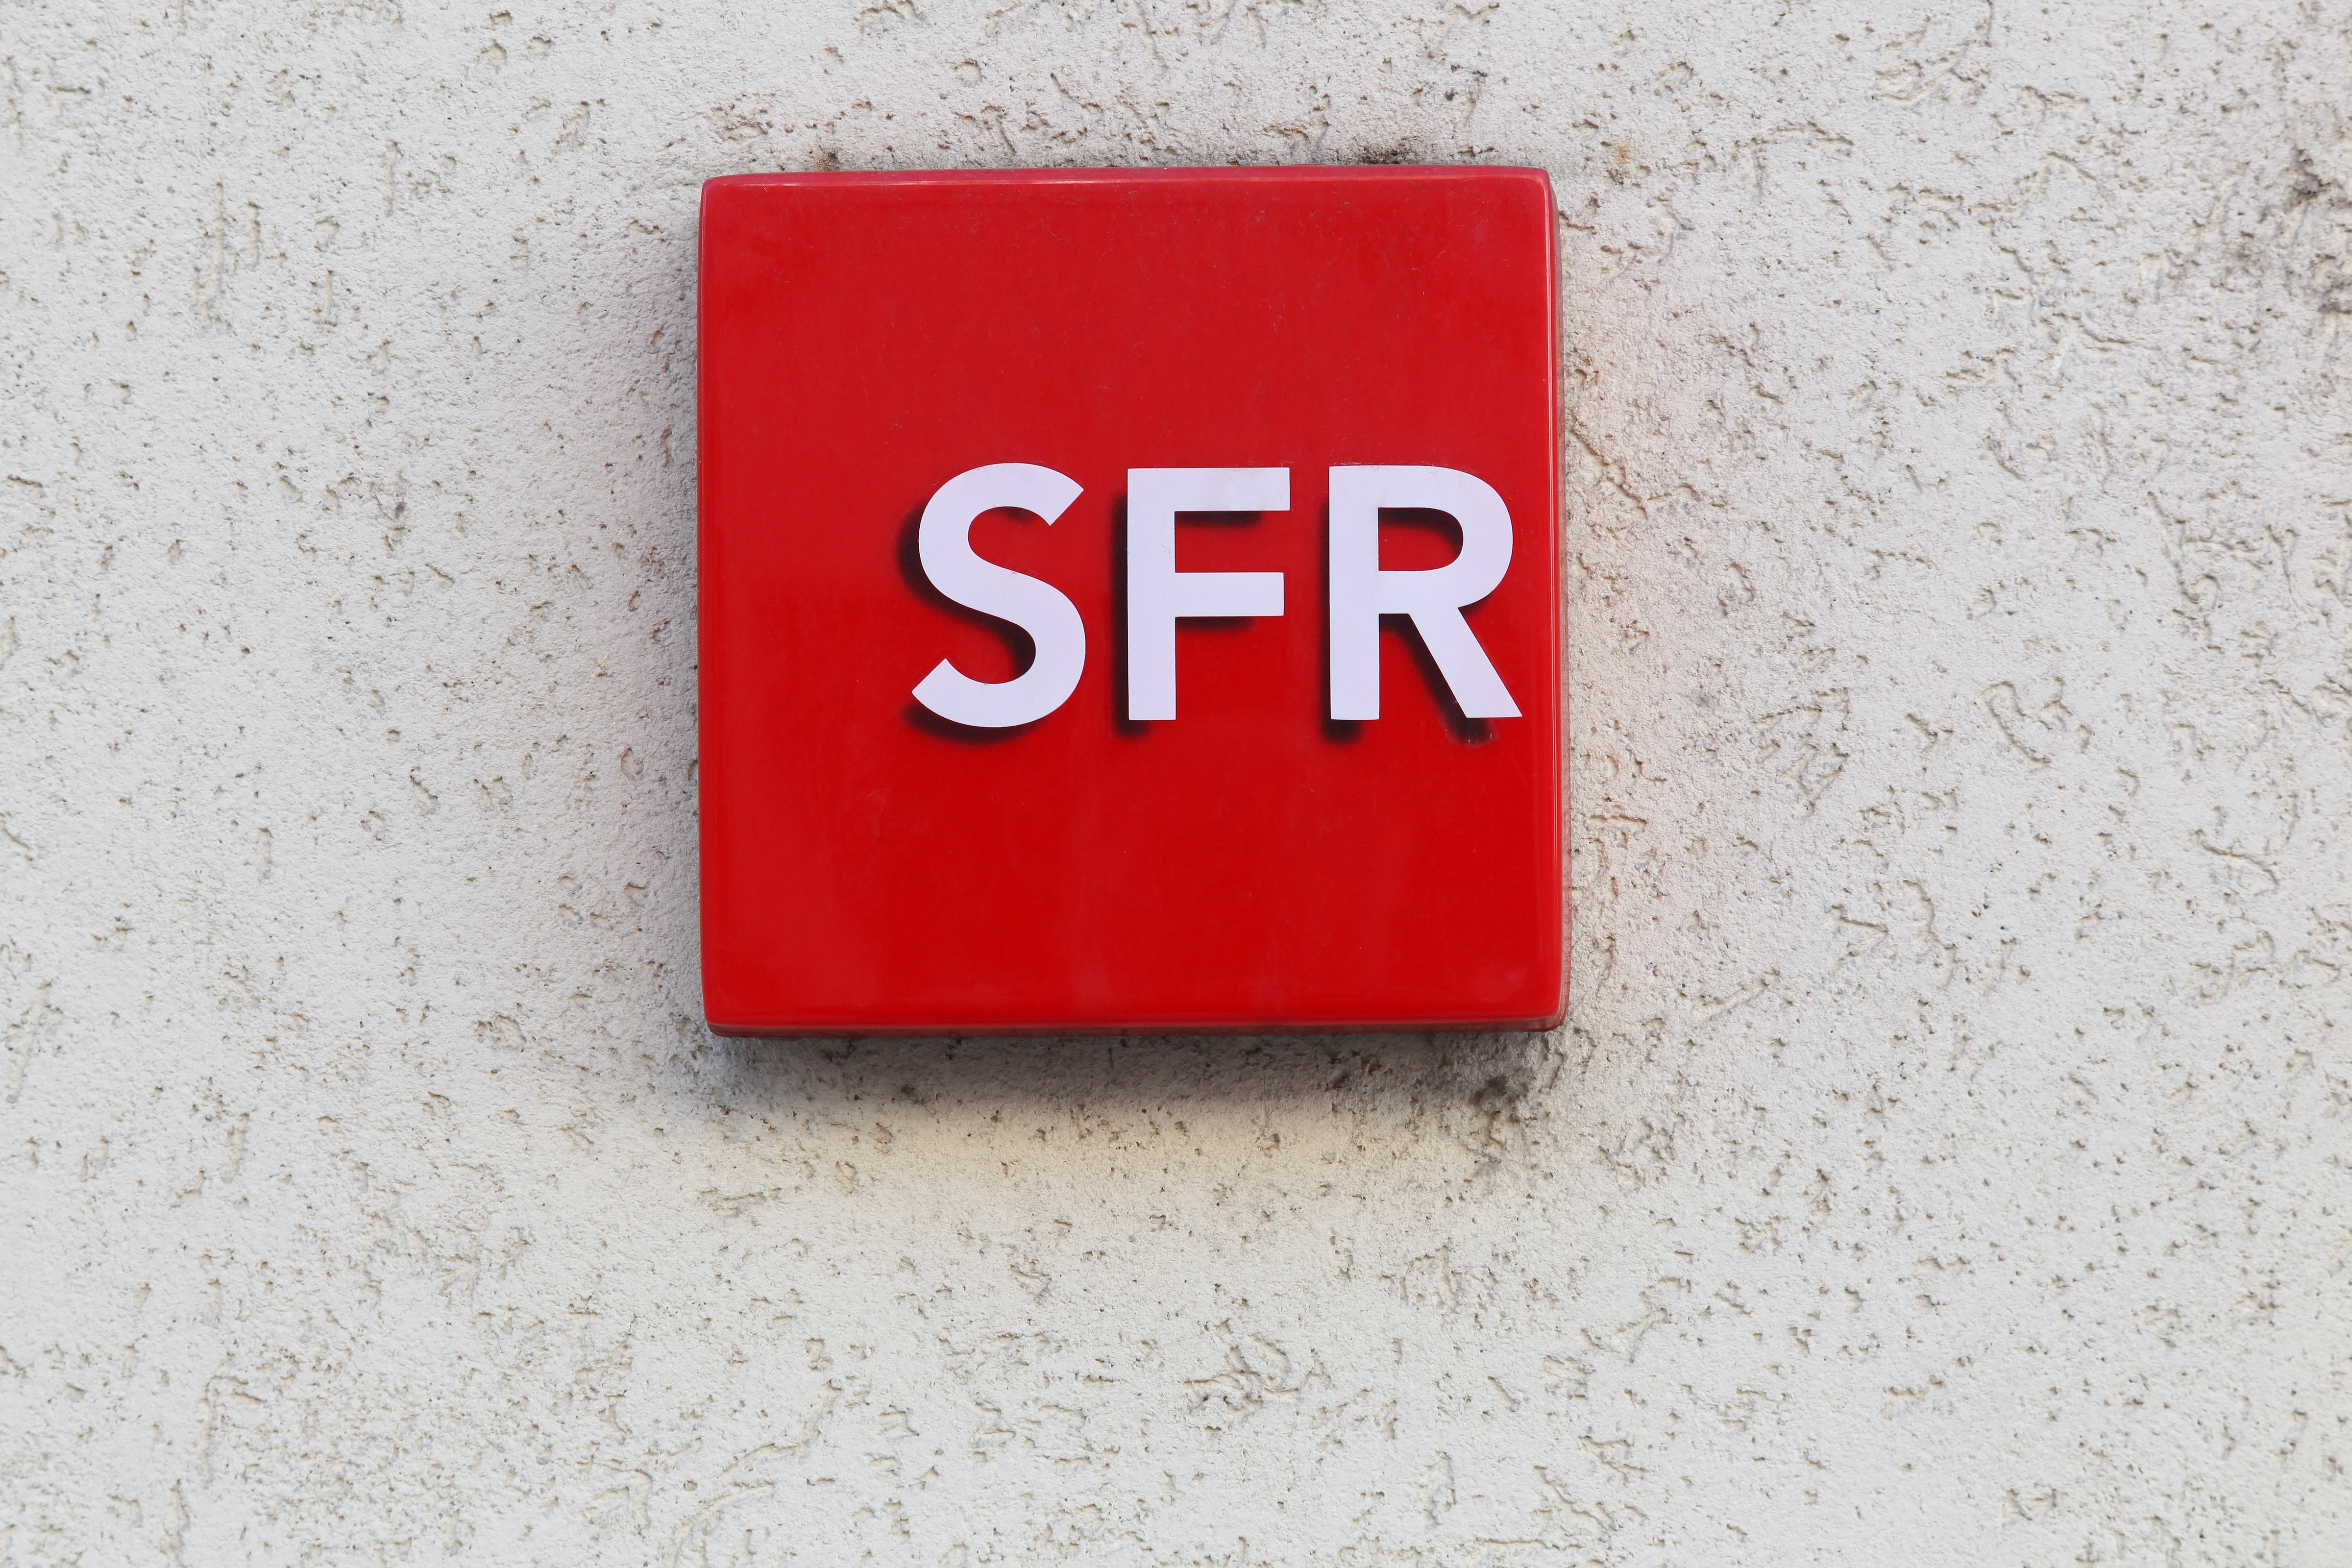 Сфр ру кабинет. SFR. СФР логотип. SFR значок. Оператор SFR logo.